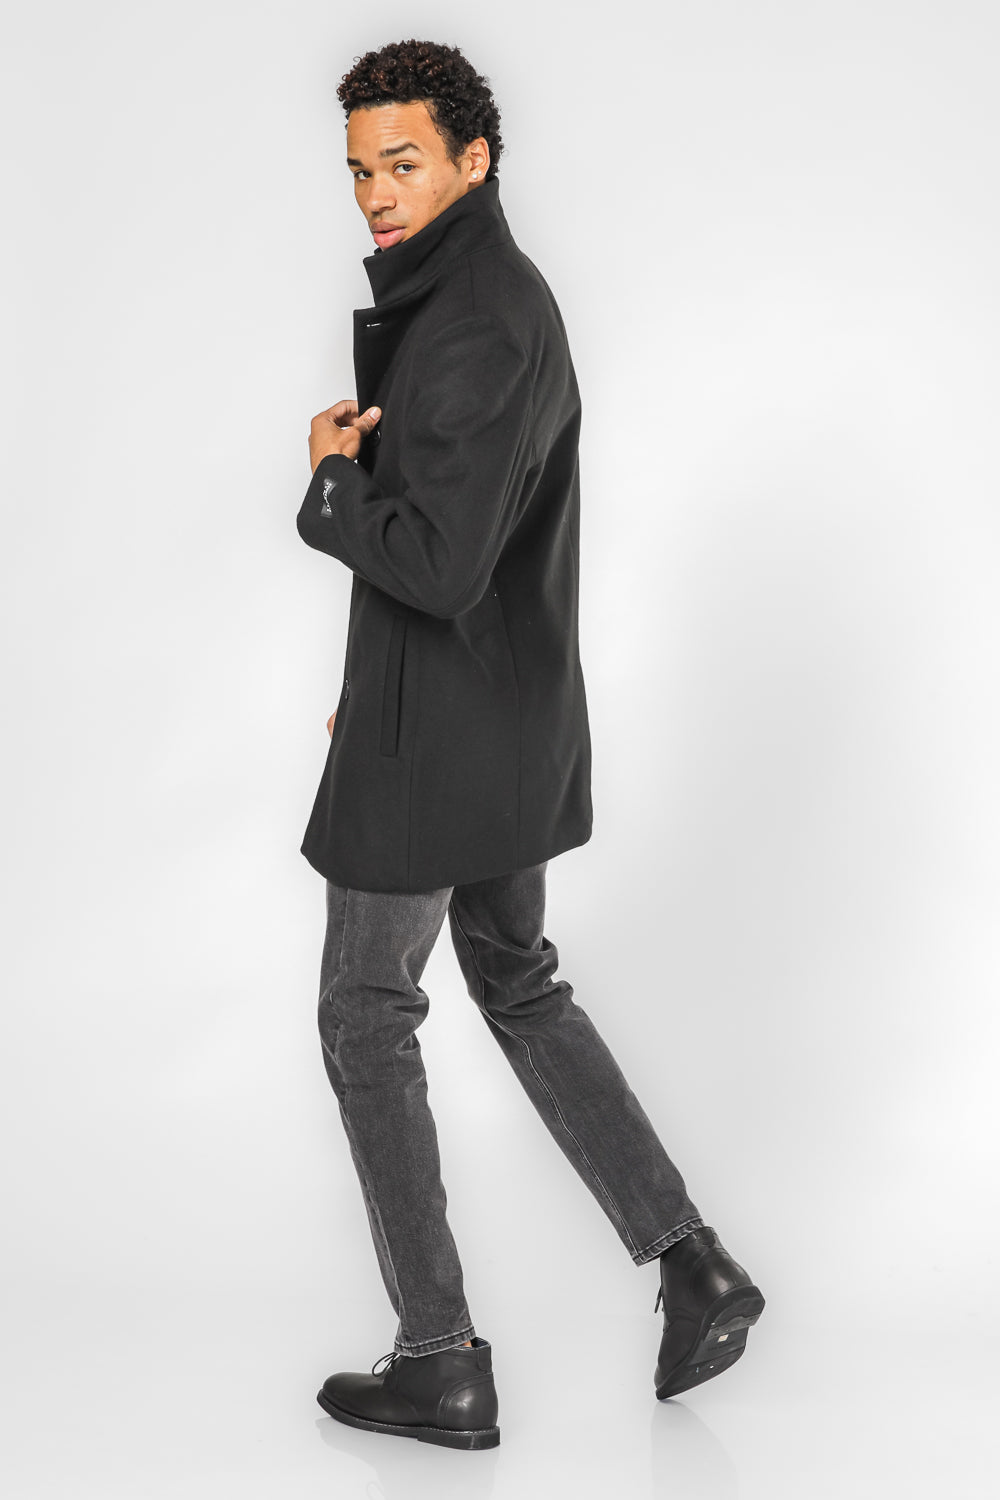 מעיל אלגנט לגבר בצבע שחור